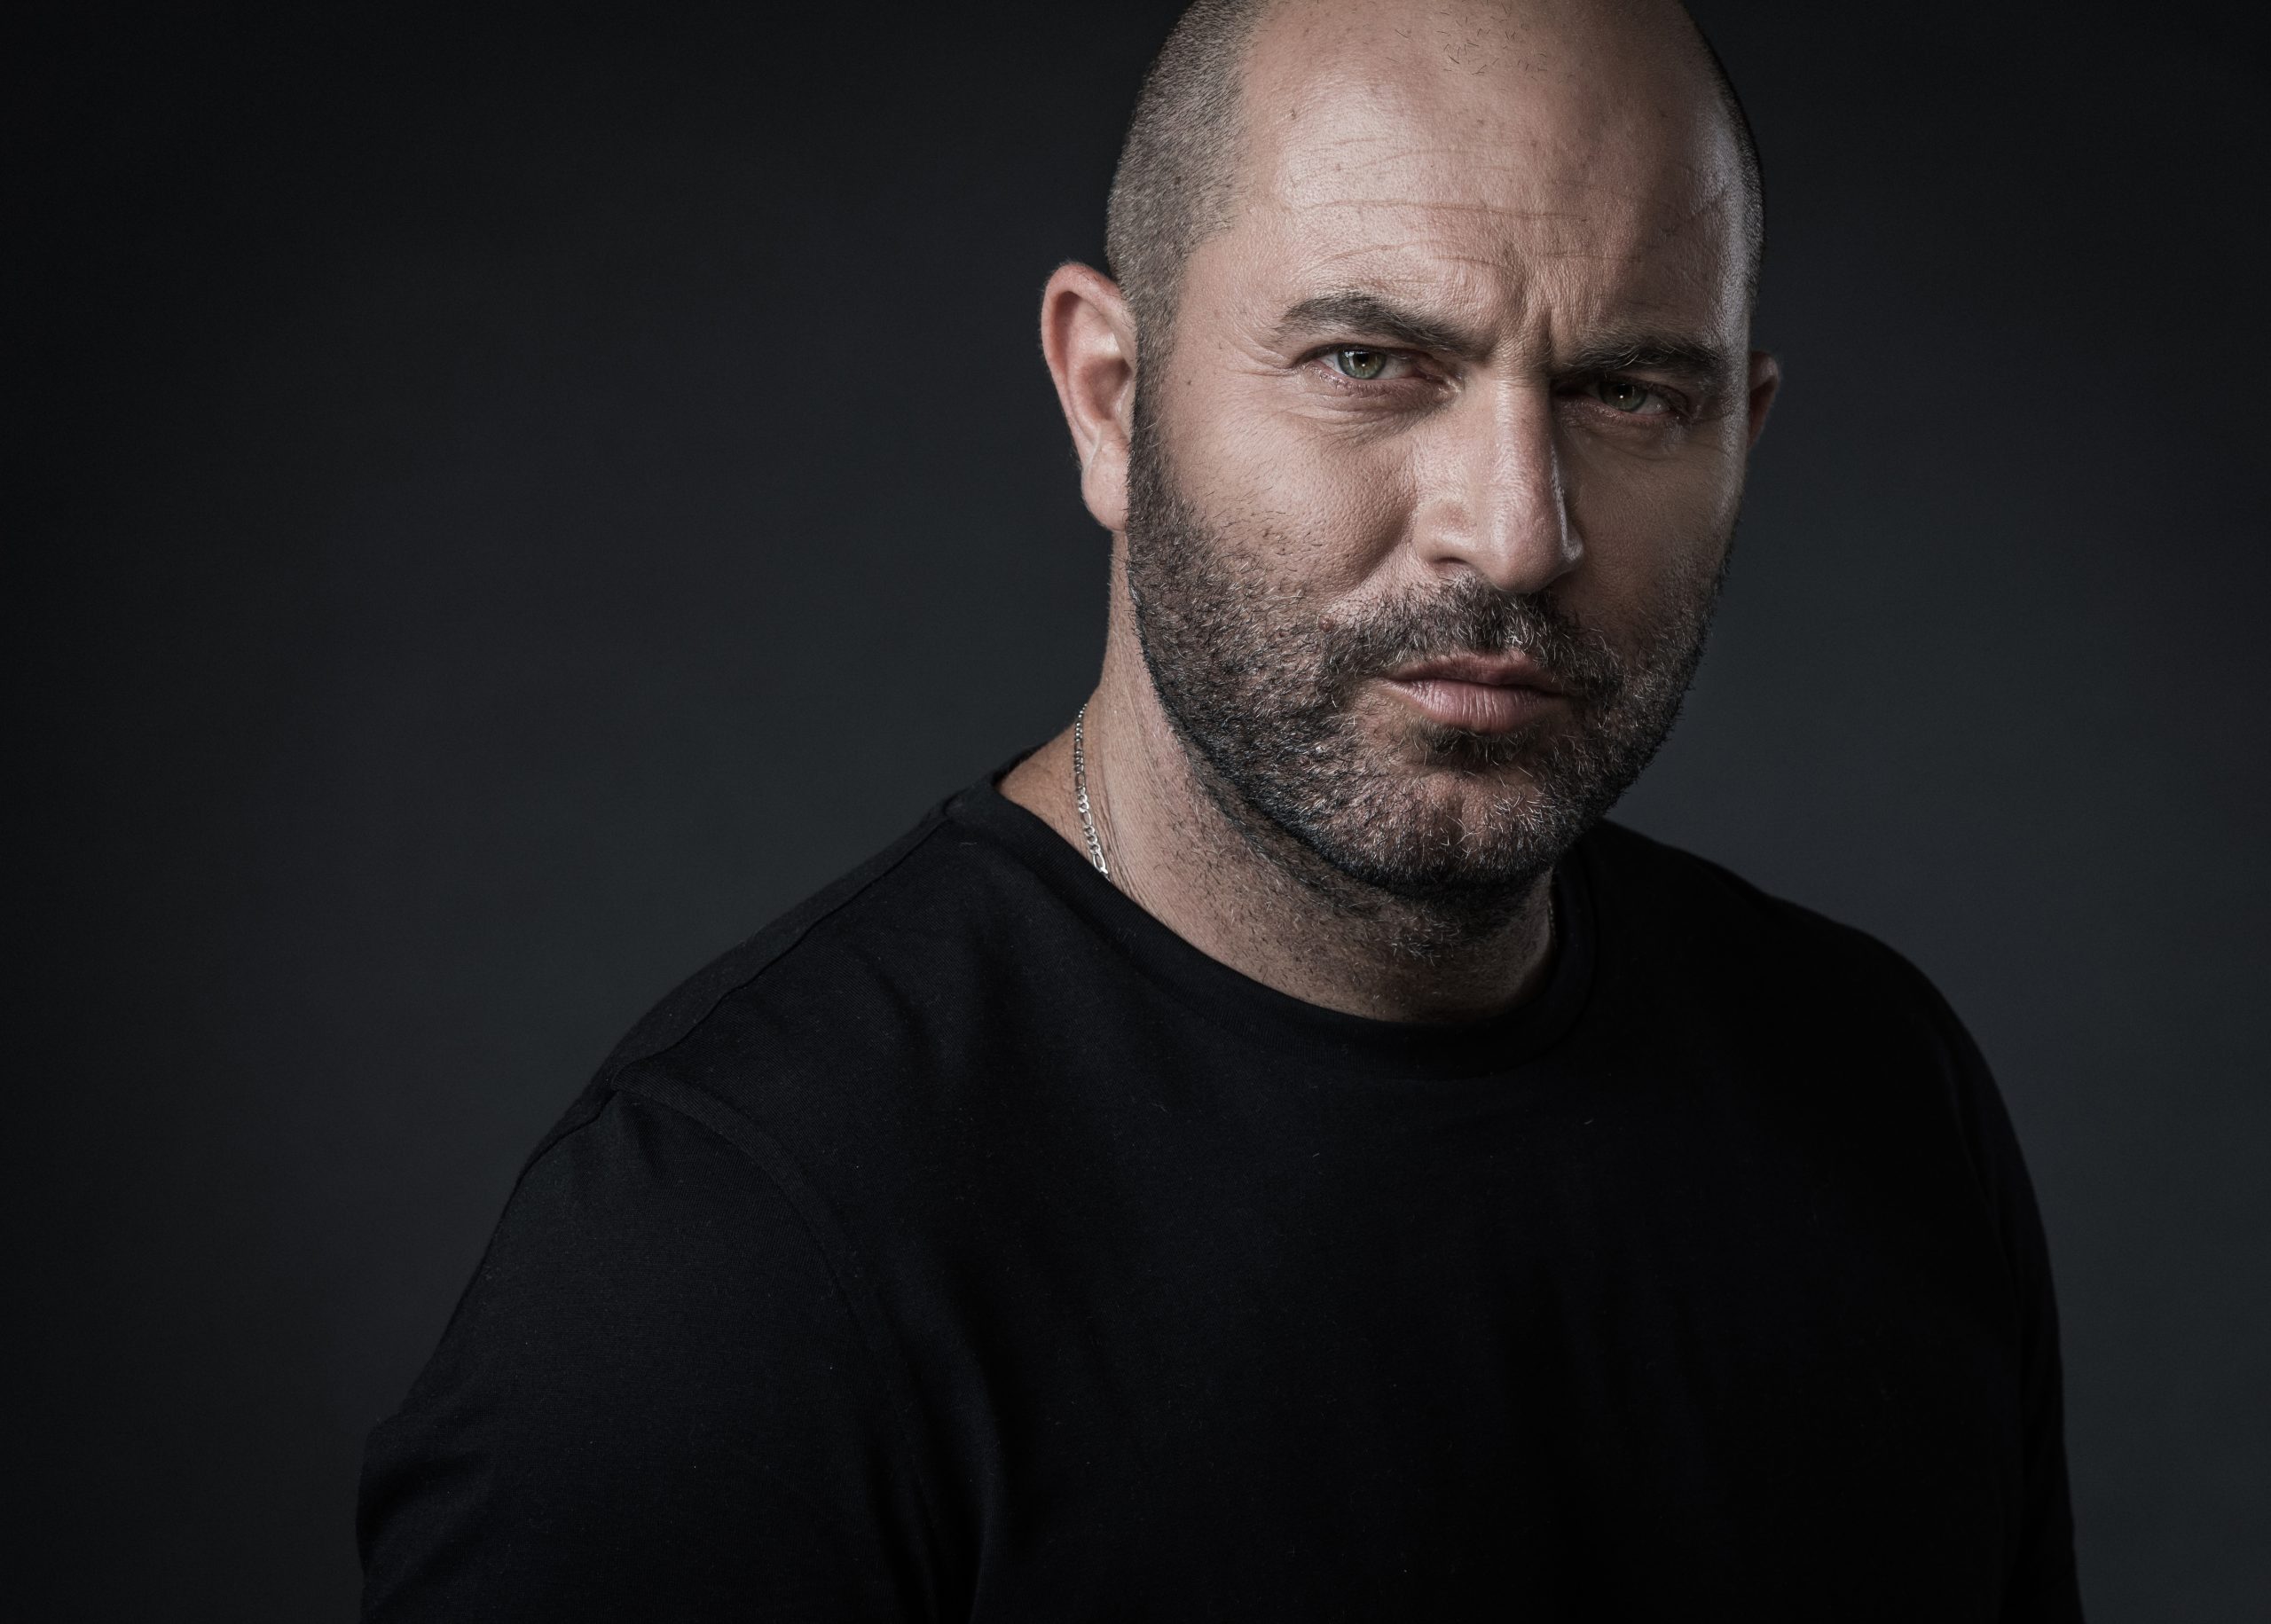 Ισραήλ: Ο πρωταγωνιστής Λίορ Ραζ της σειράς «Fauda» του Netflix στην πρώτη γραμμή της μάχης